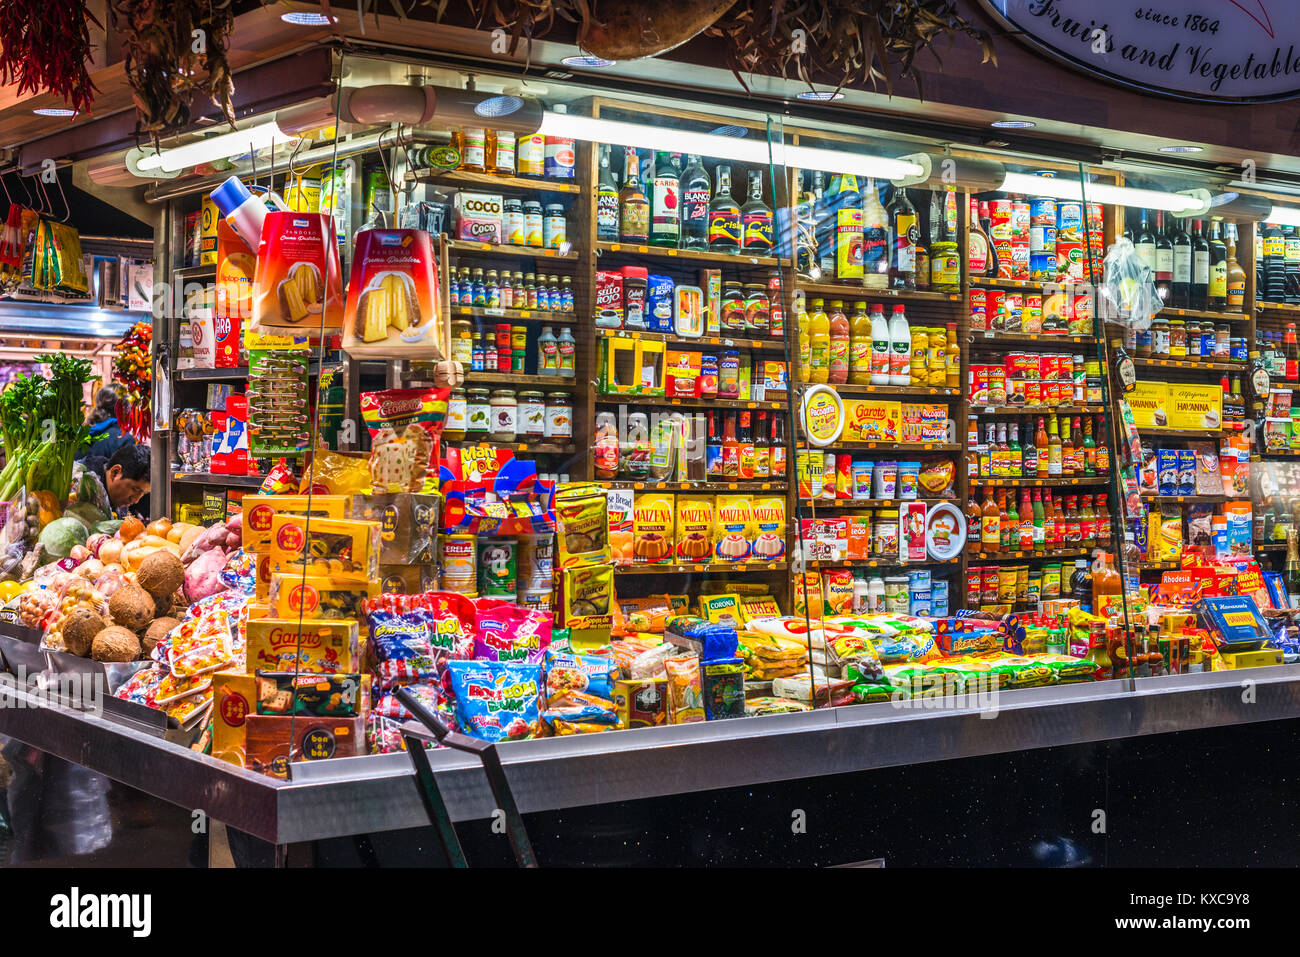 Im alten Stil Lebensmittelgeschäft Speicher am Markt La Boqueria, La Rambla, Barcelona, Katalonien, Spanien. Stockfoto